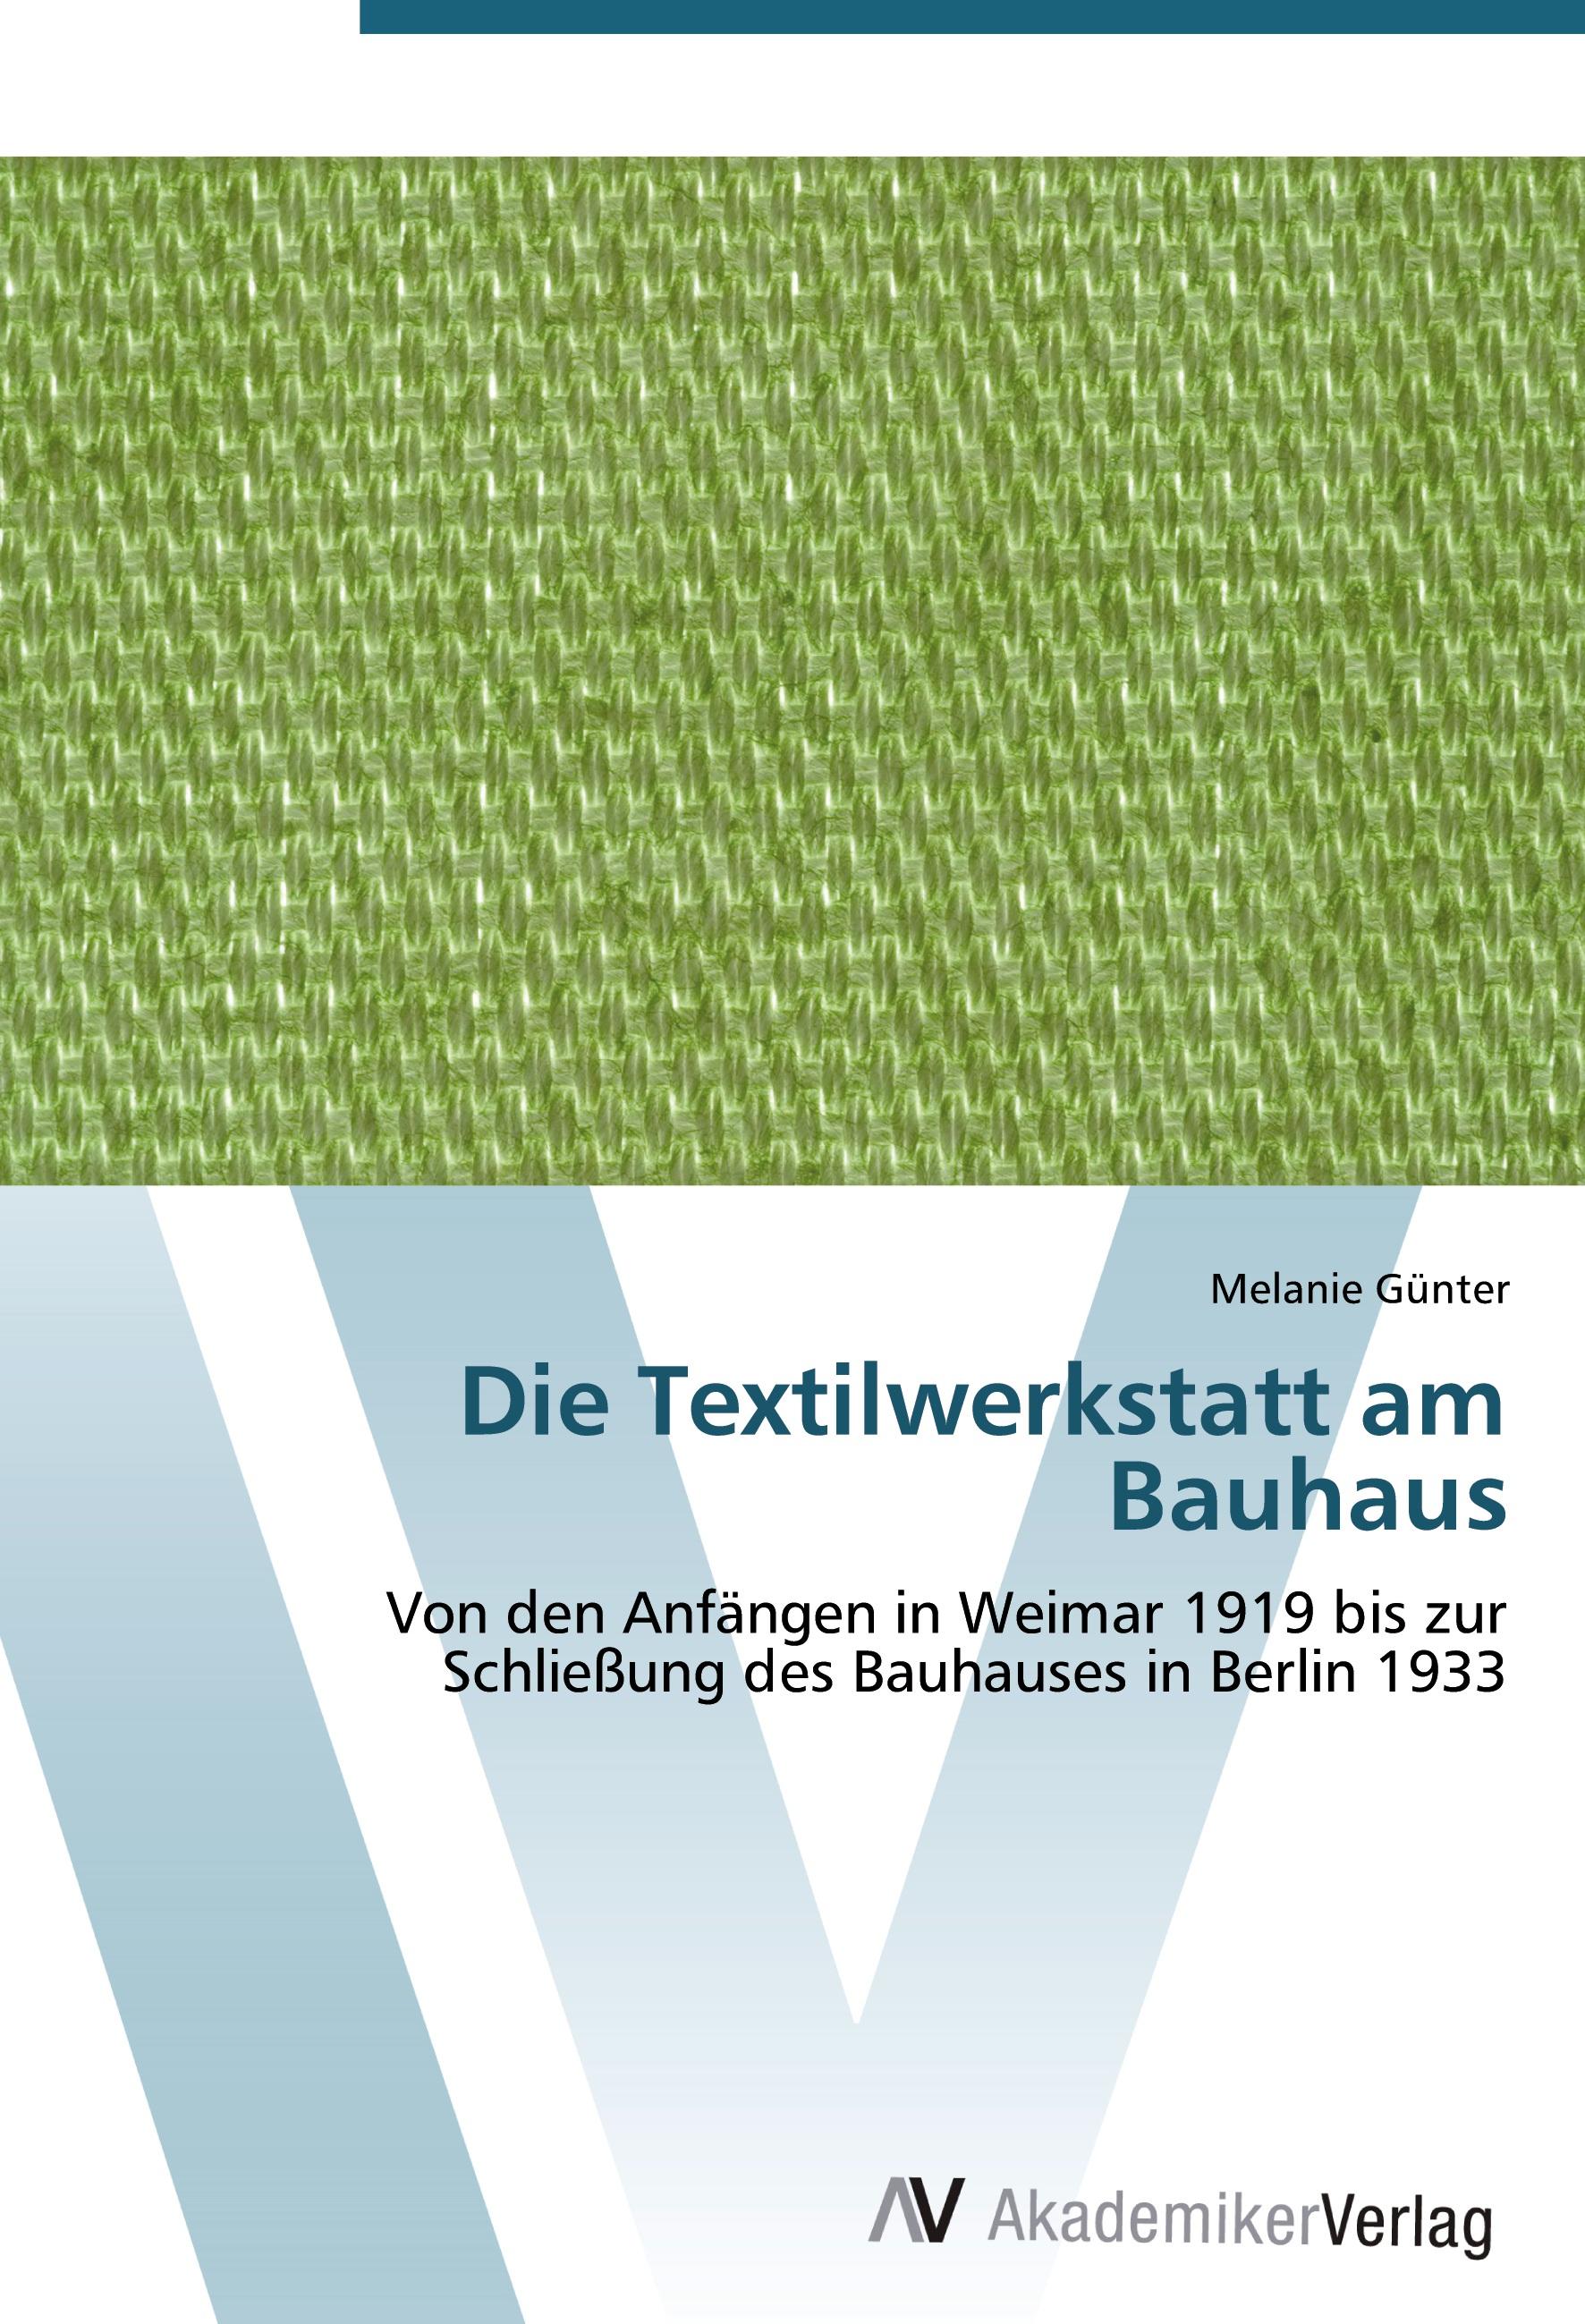 Die Textilwerkstatt am Bauhaus - Melanie Günter